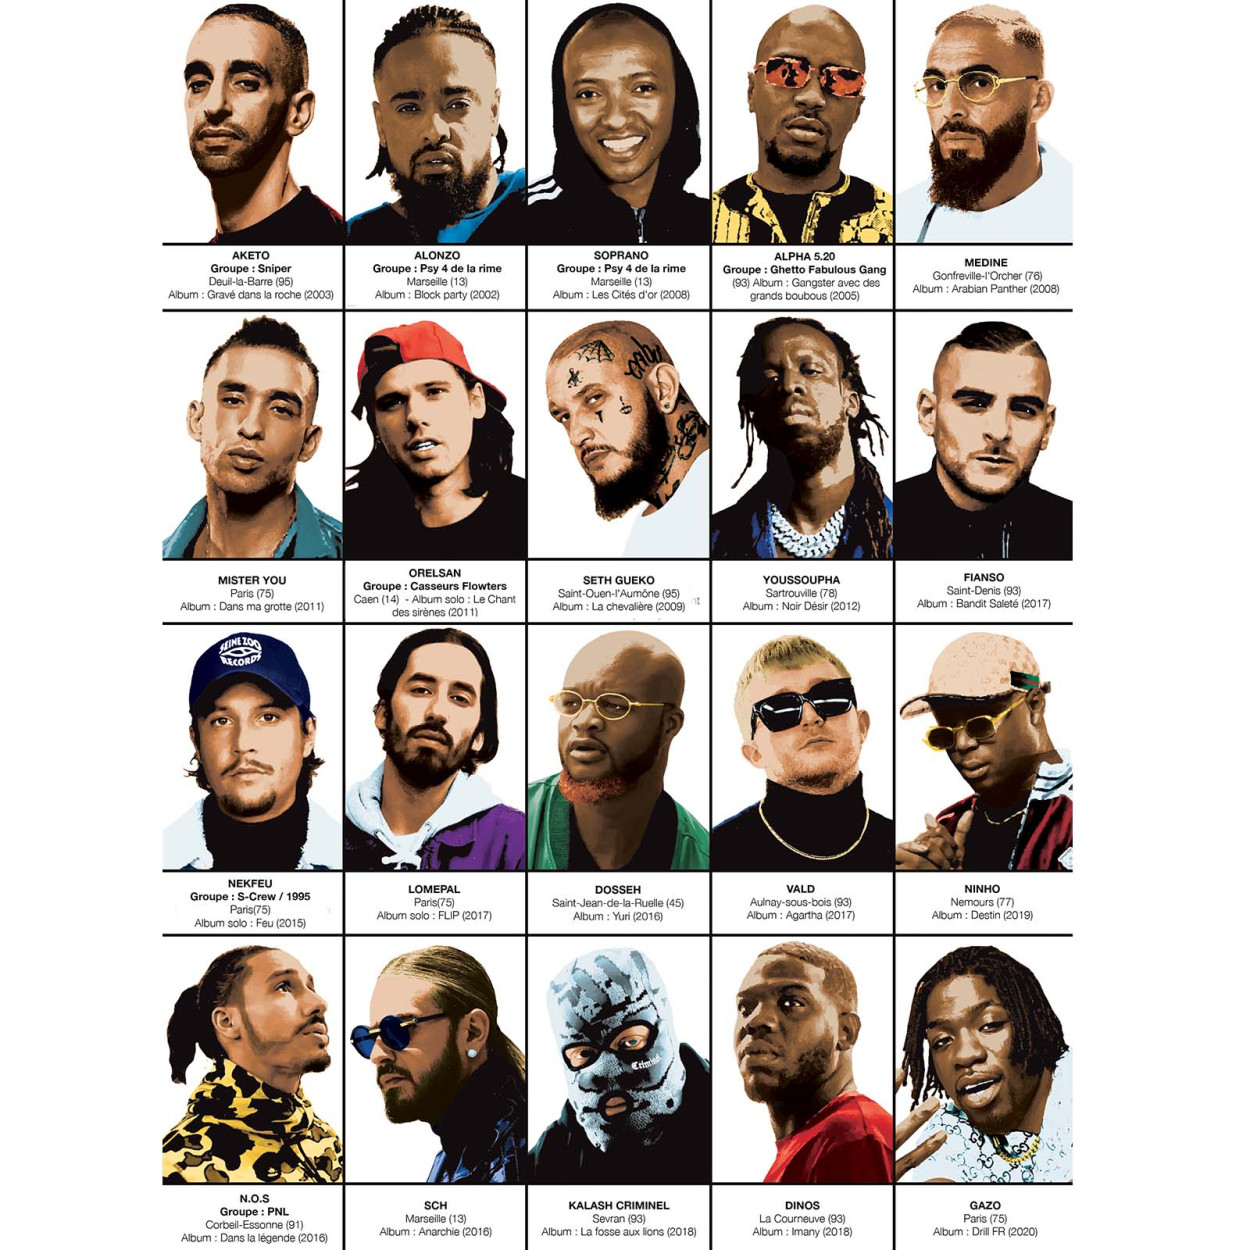 Le Rap Français - Affiche 50 x 70 cm